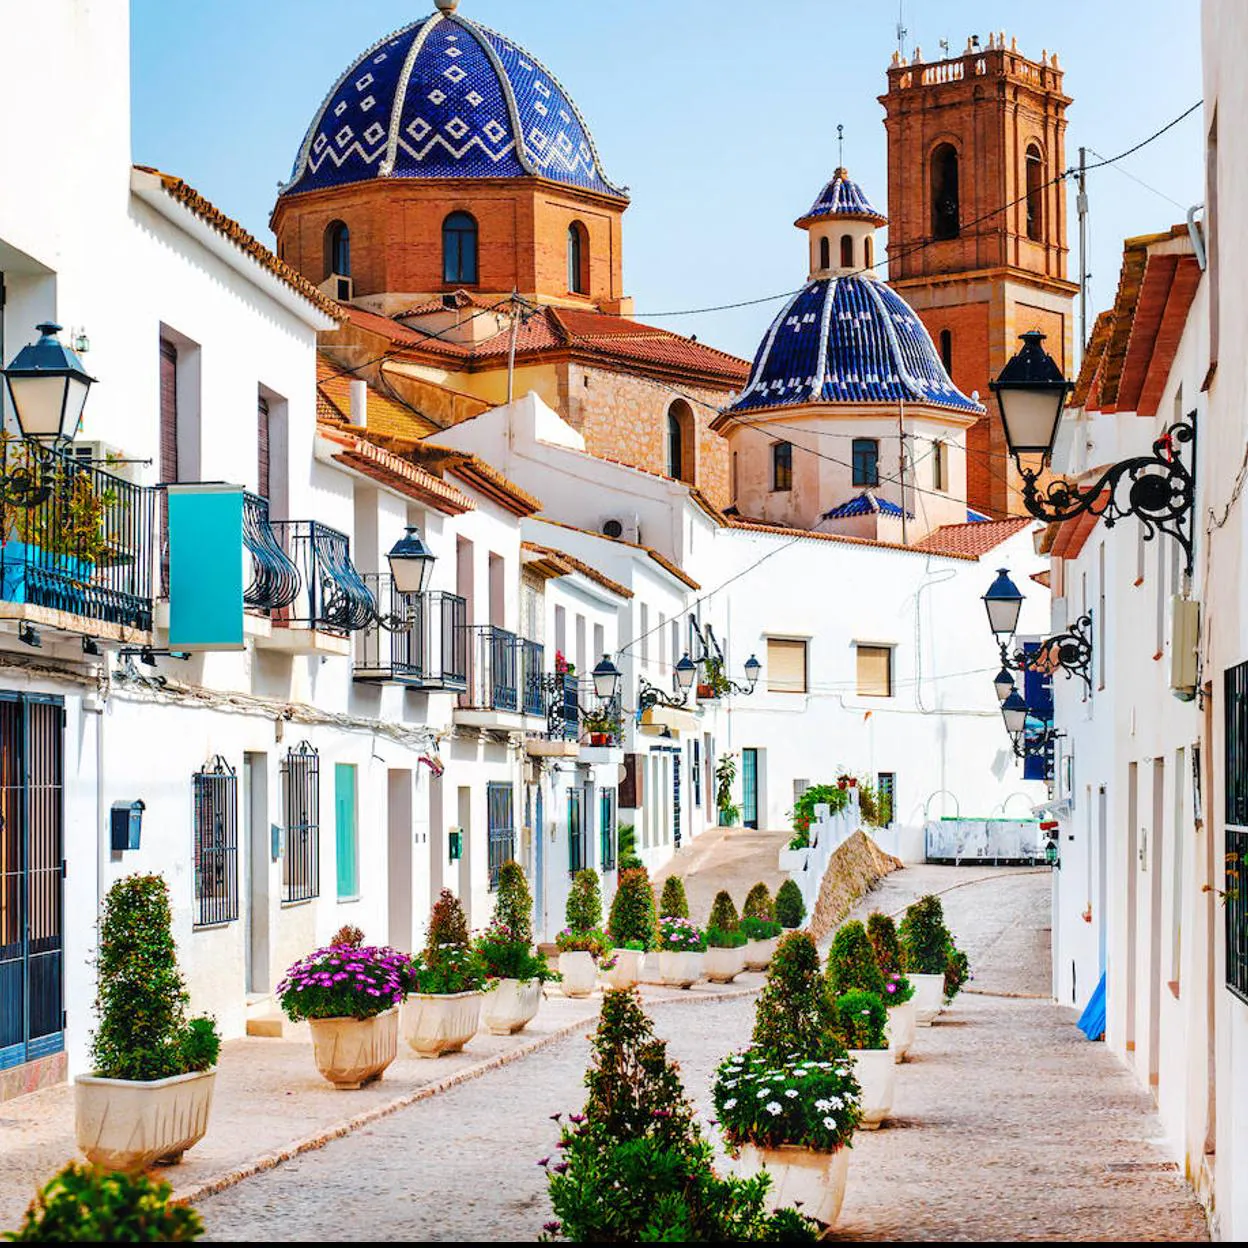 Pincha en la foto para descubrir los pueblos más bonitos de España./getty